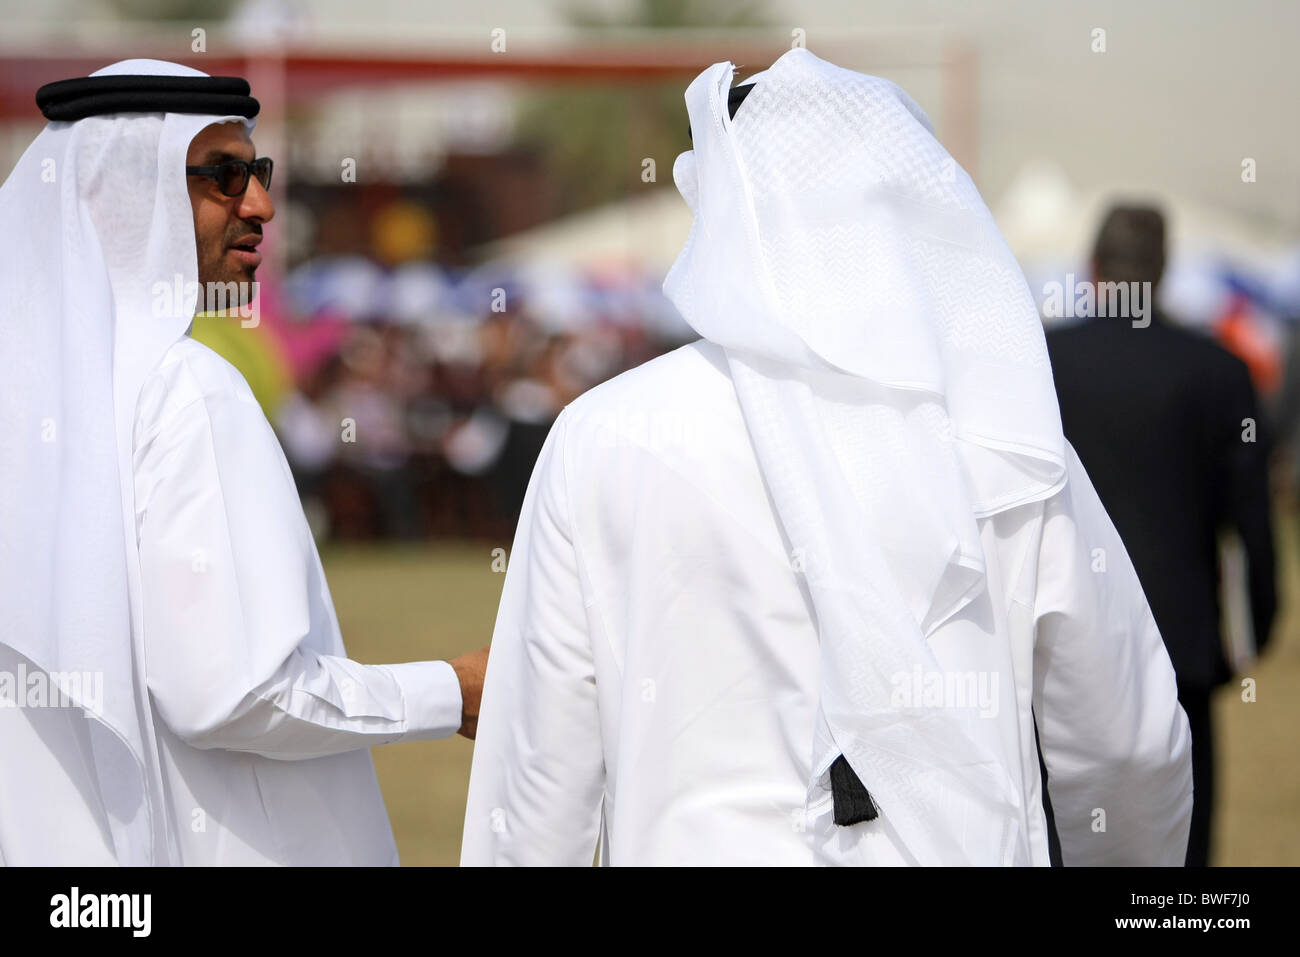 Men in national clothing, Dubai, United Arab Emirates Stock Photo